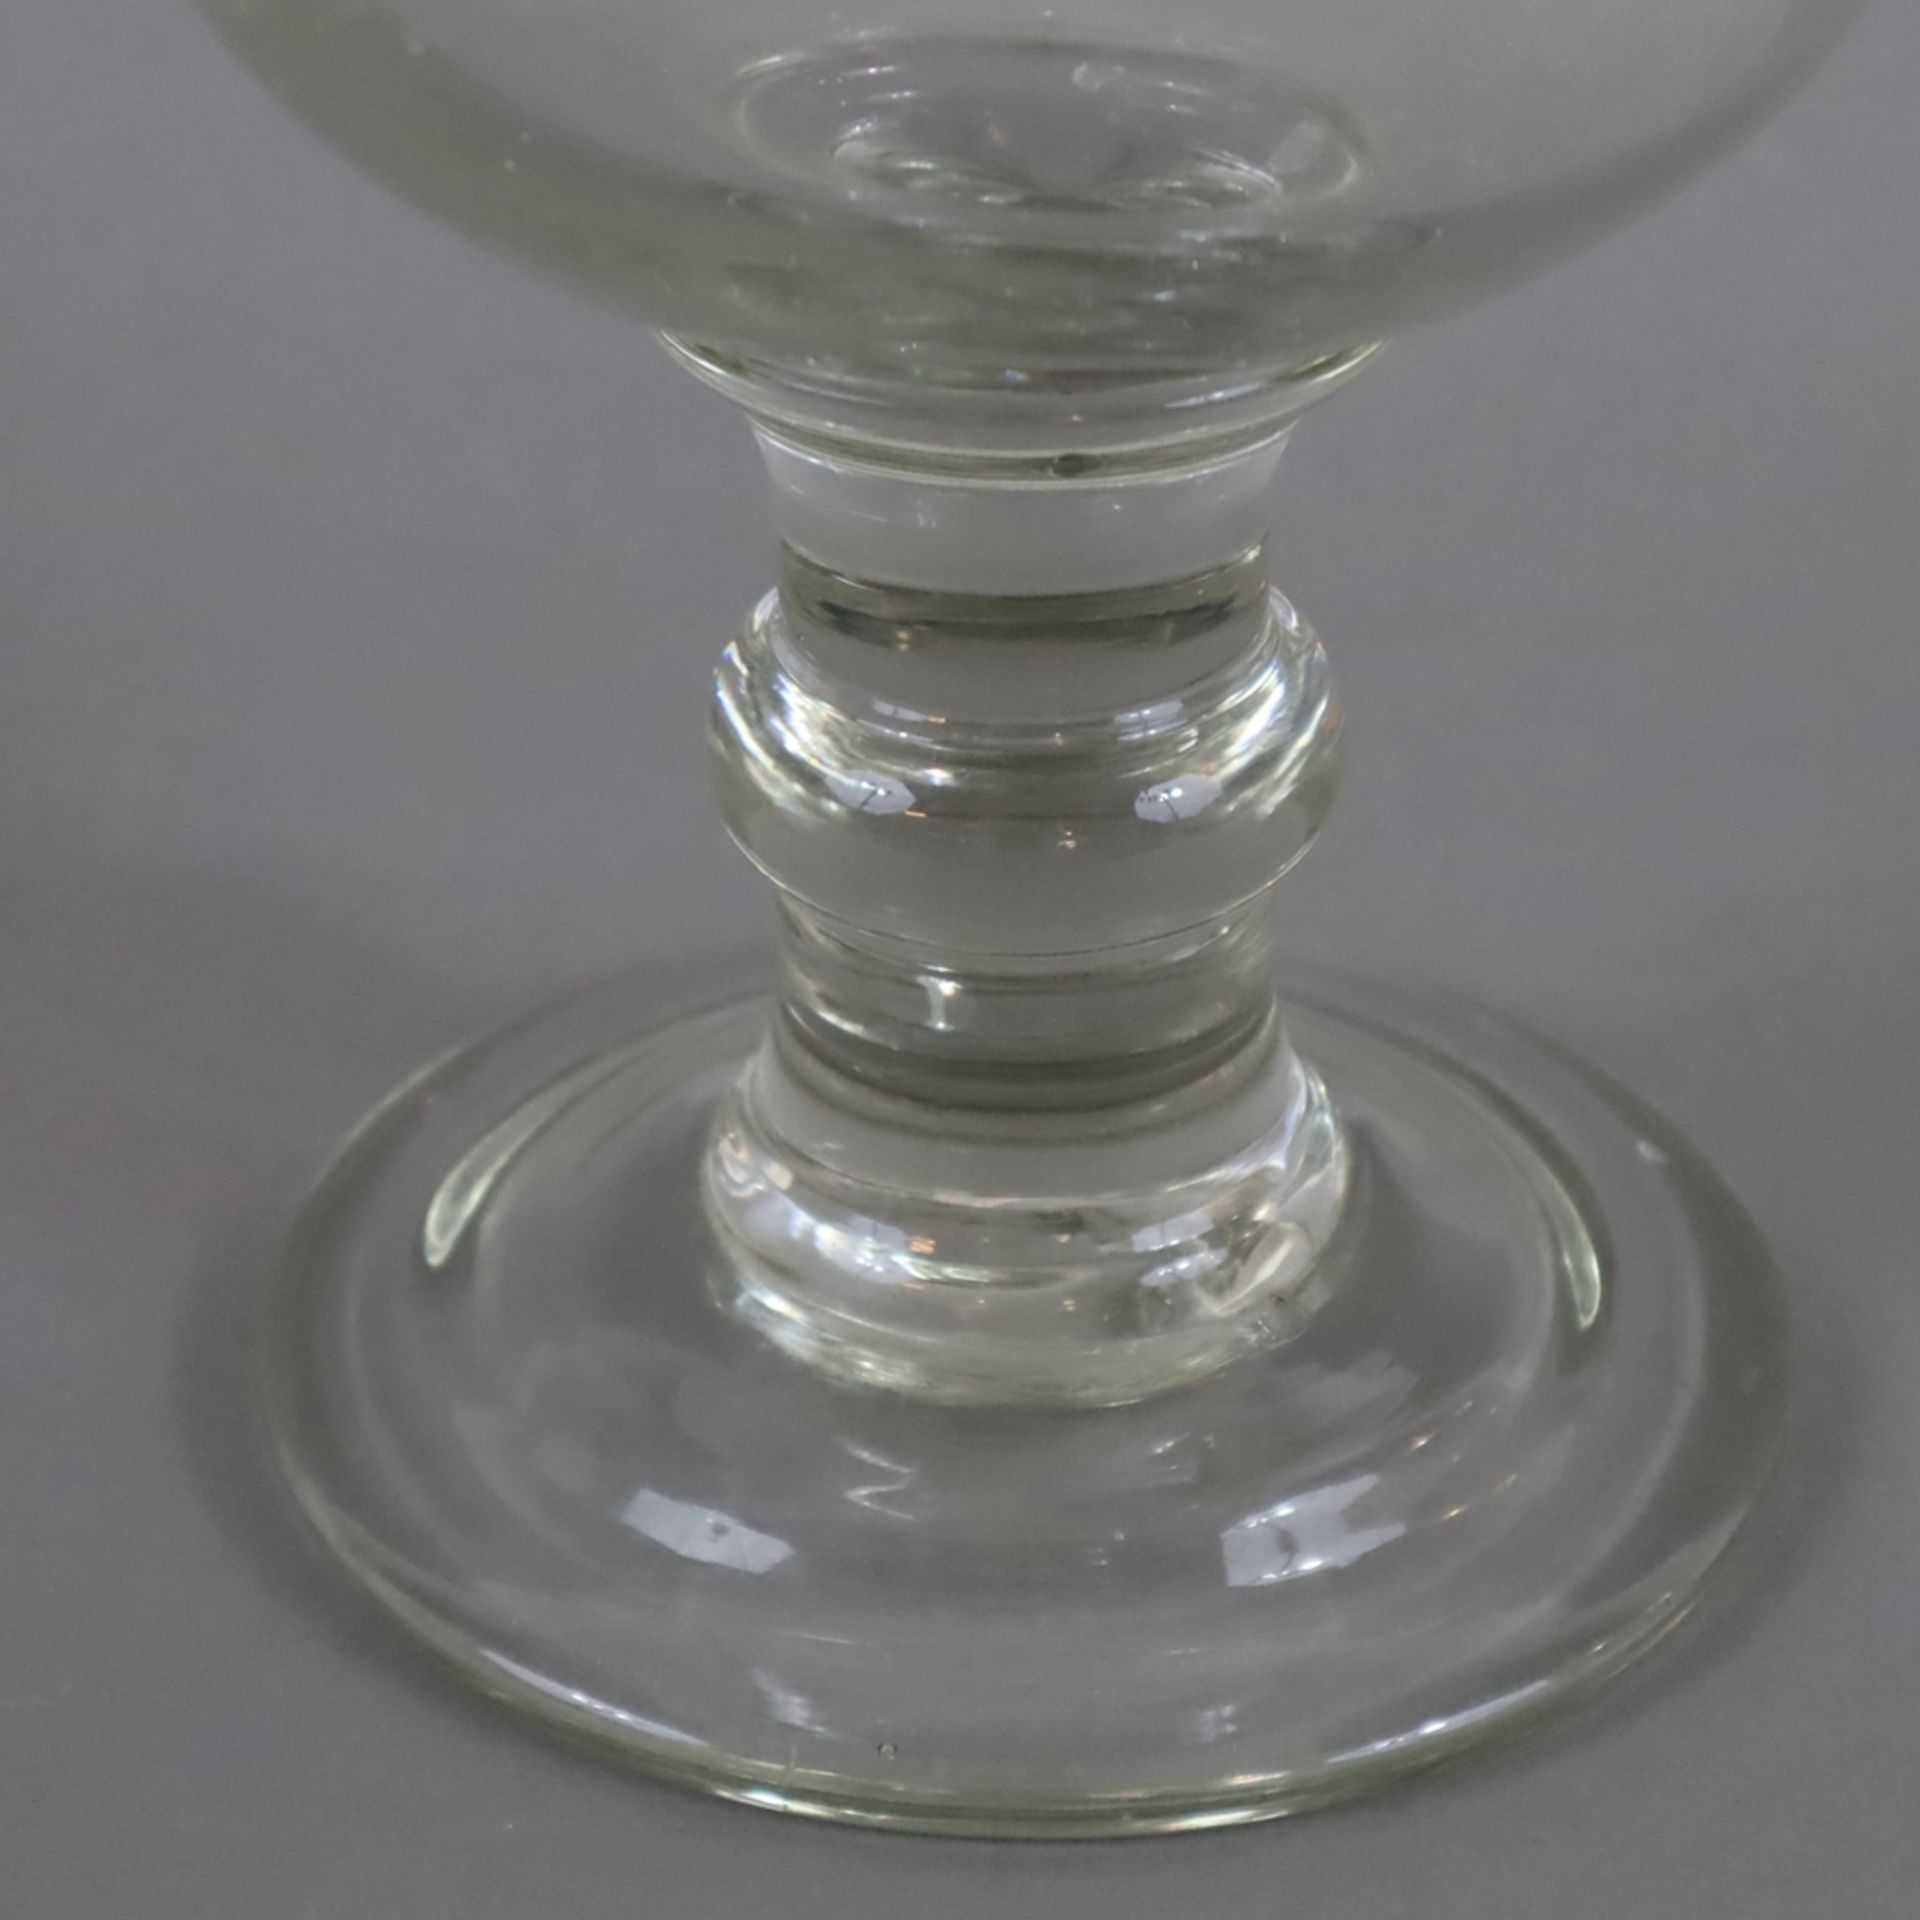 Übergroßes Berliner-Weisse-Glas - 19.Jh., 2 Liter, dickwandiges farbloses Glas, auf rundem gewölbte - Bild 3 aus 5